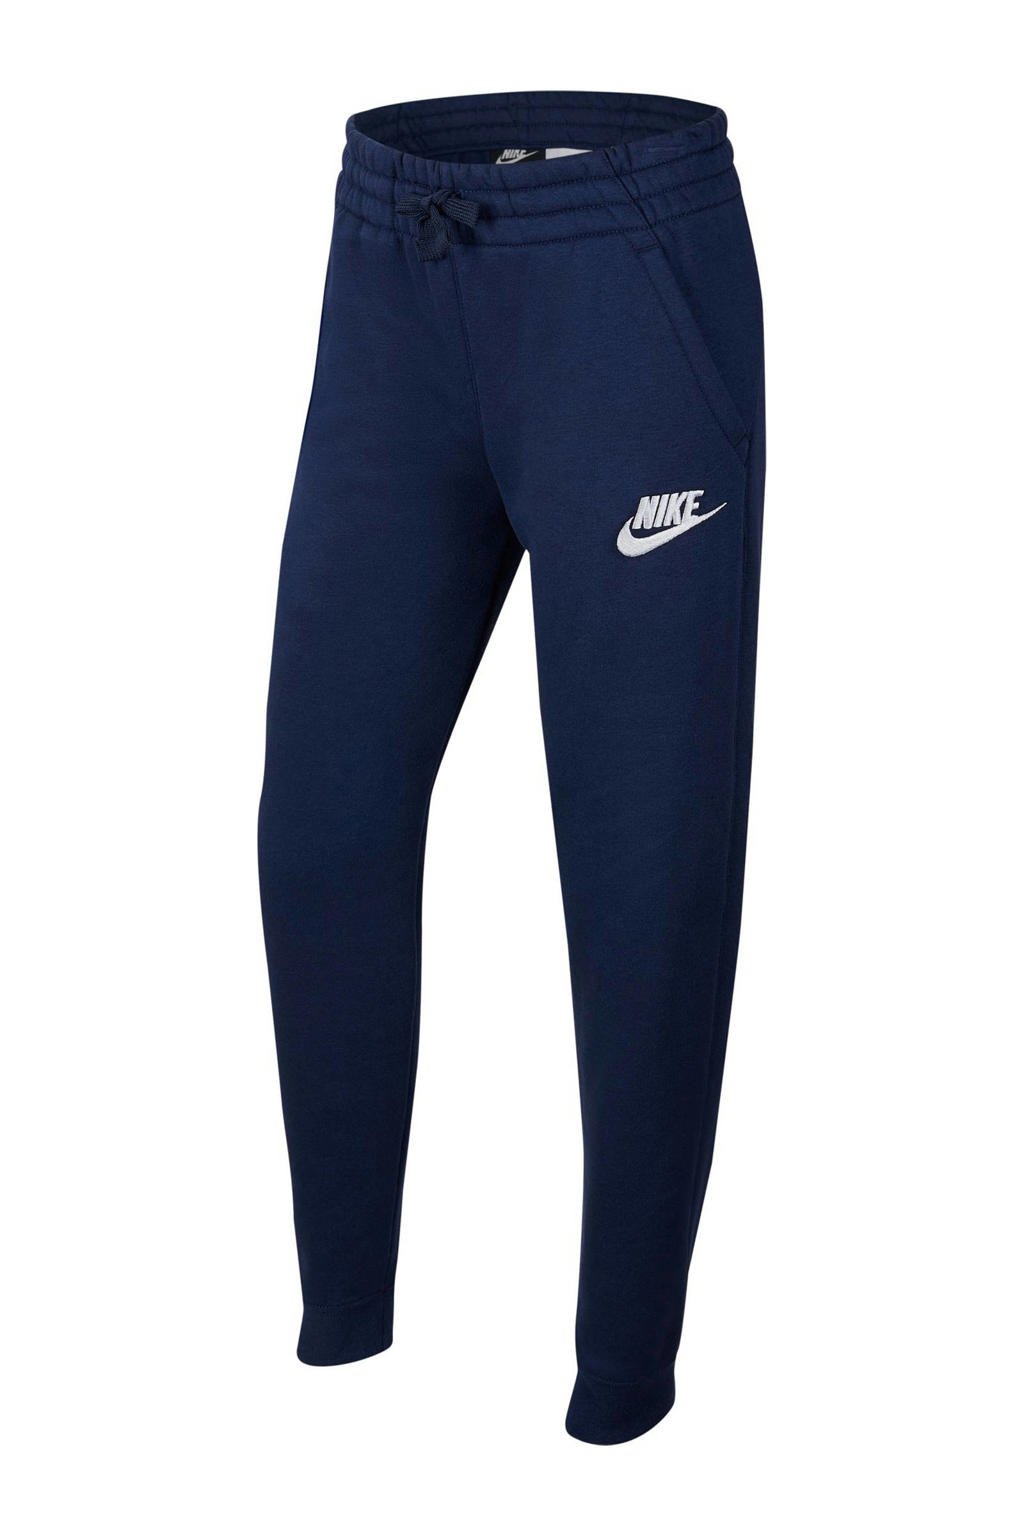 Donkerblauw en witte jongens Nike regular fit joggingbroek van katoen met elastische tailleband met koord